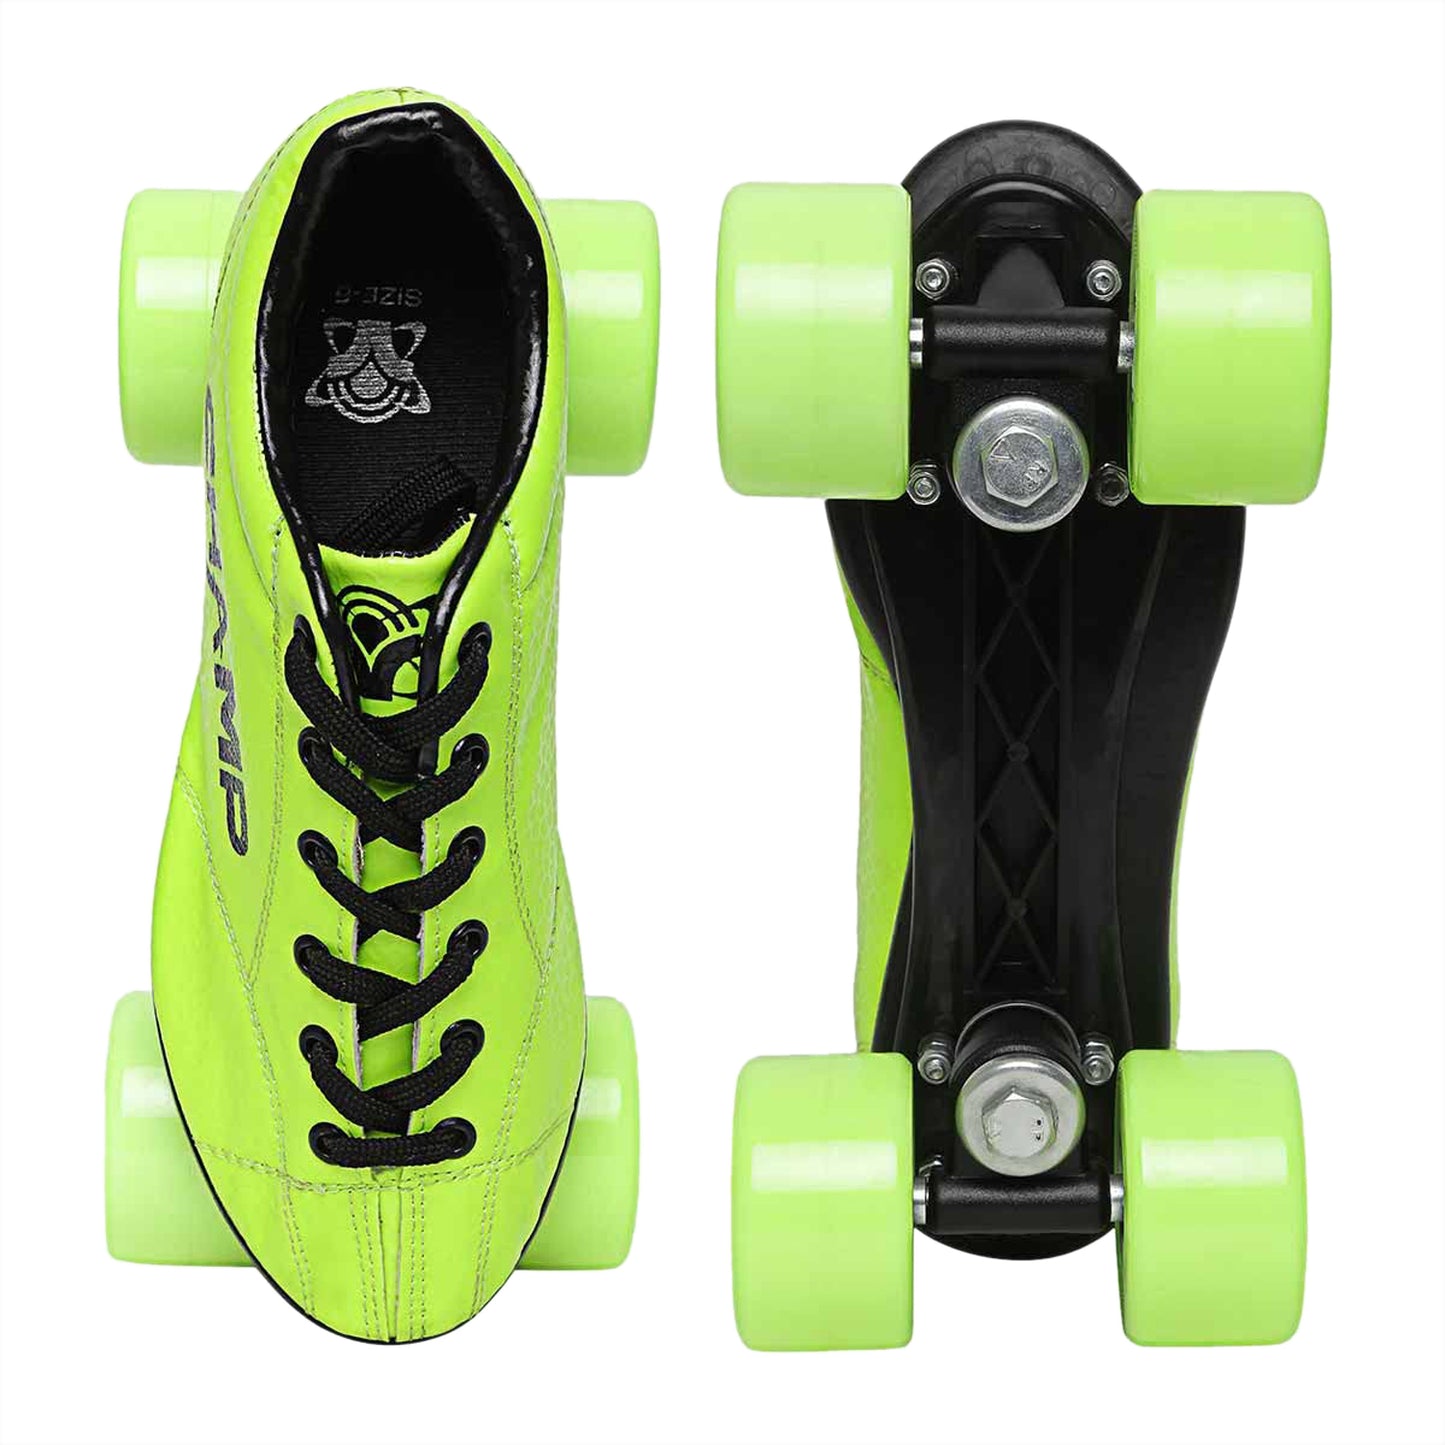 Vicky Champ Shoe Skates - Lime - Best Price online Prokicksports.com